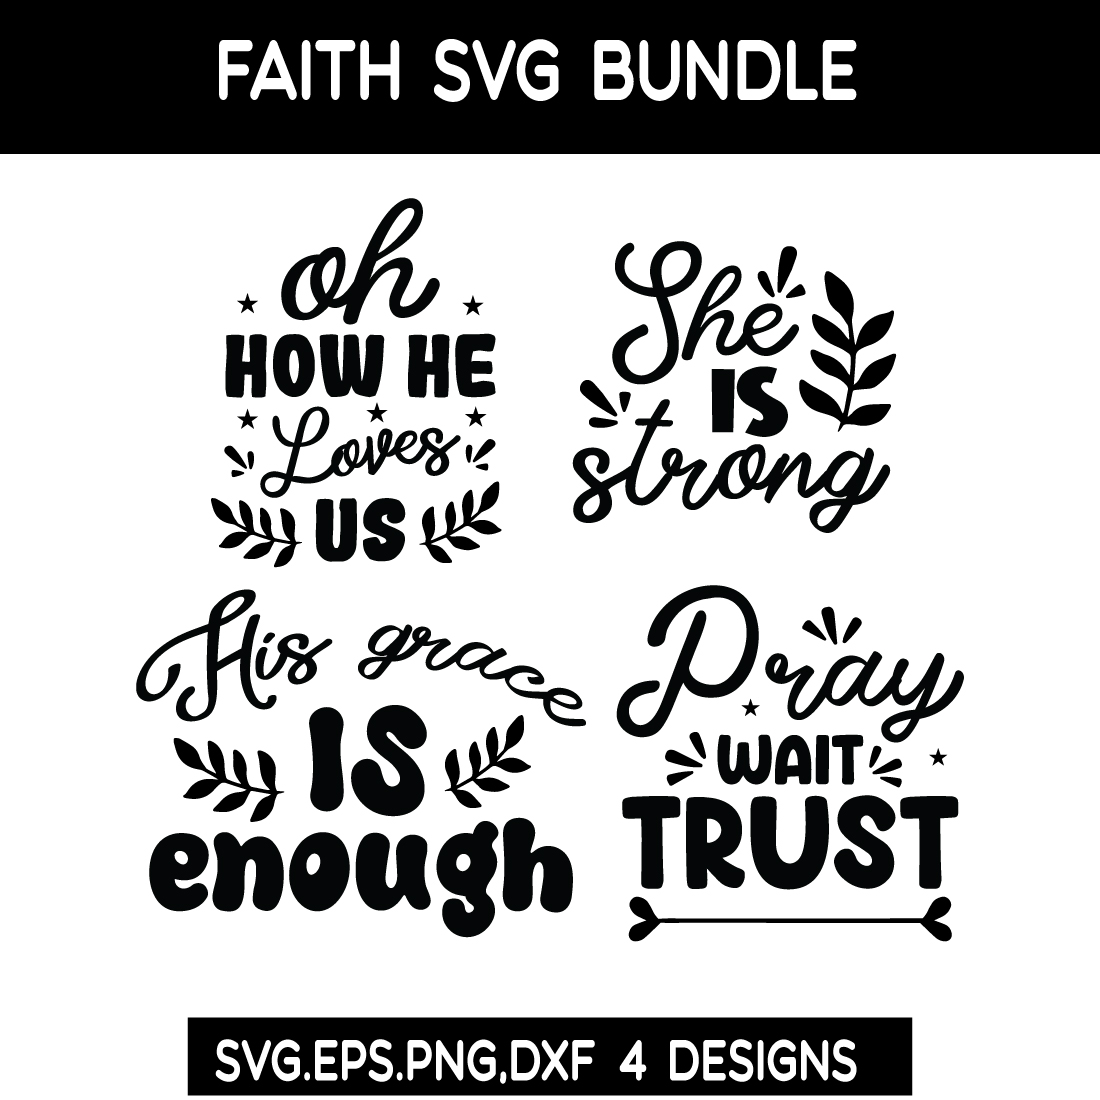 Faith SVG Bundle preview image.